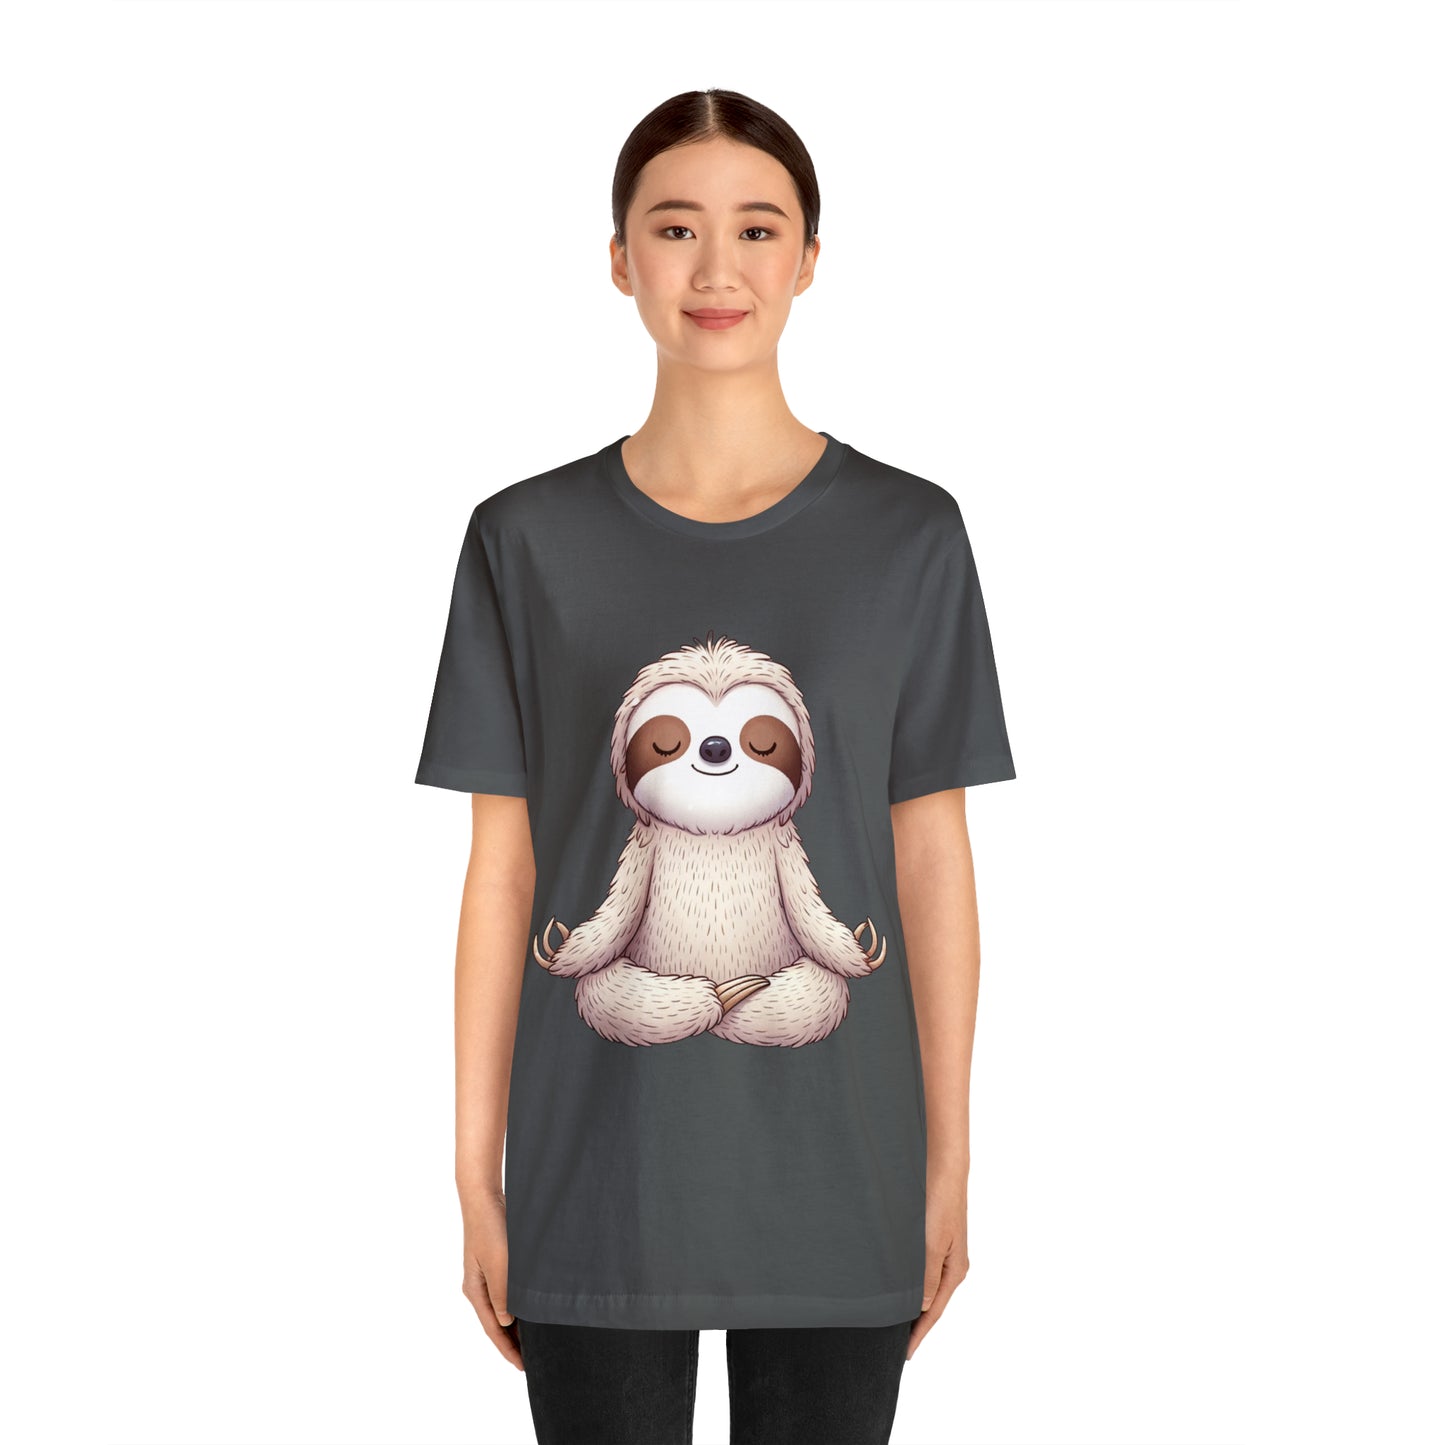 Sloth Yoga T-Shirt, Yoga Shirt, Sloth Lover,Tshirt, Funny Shirt, Yoga Lover